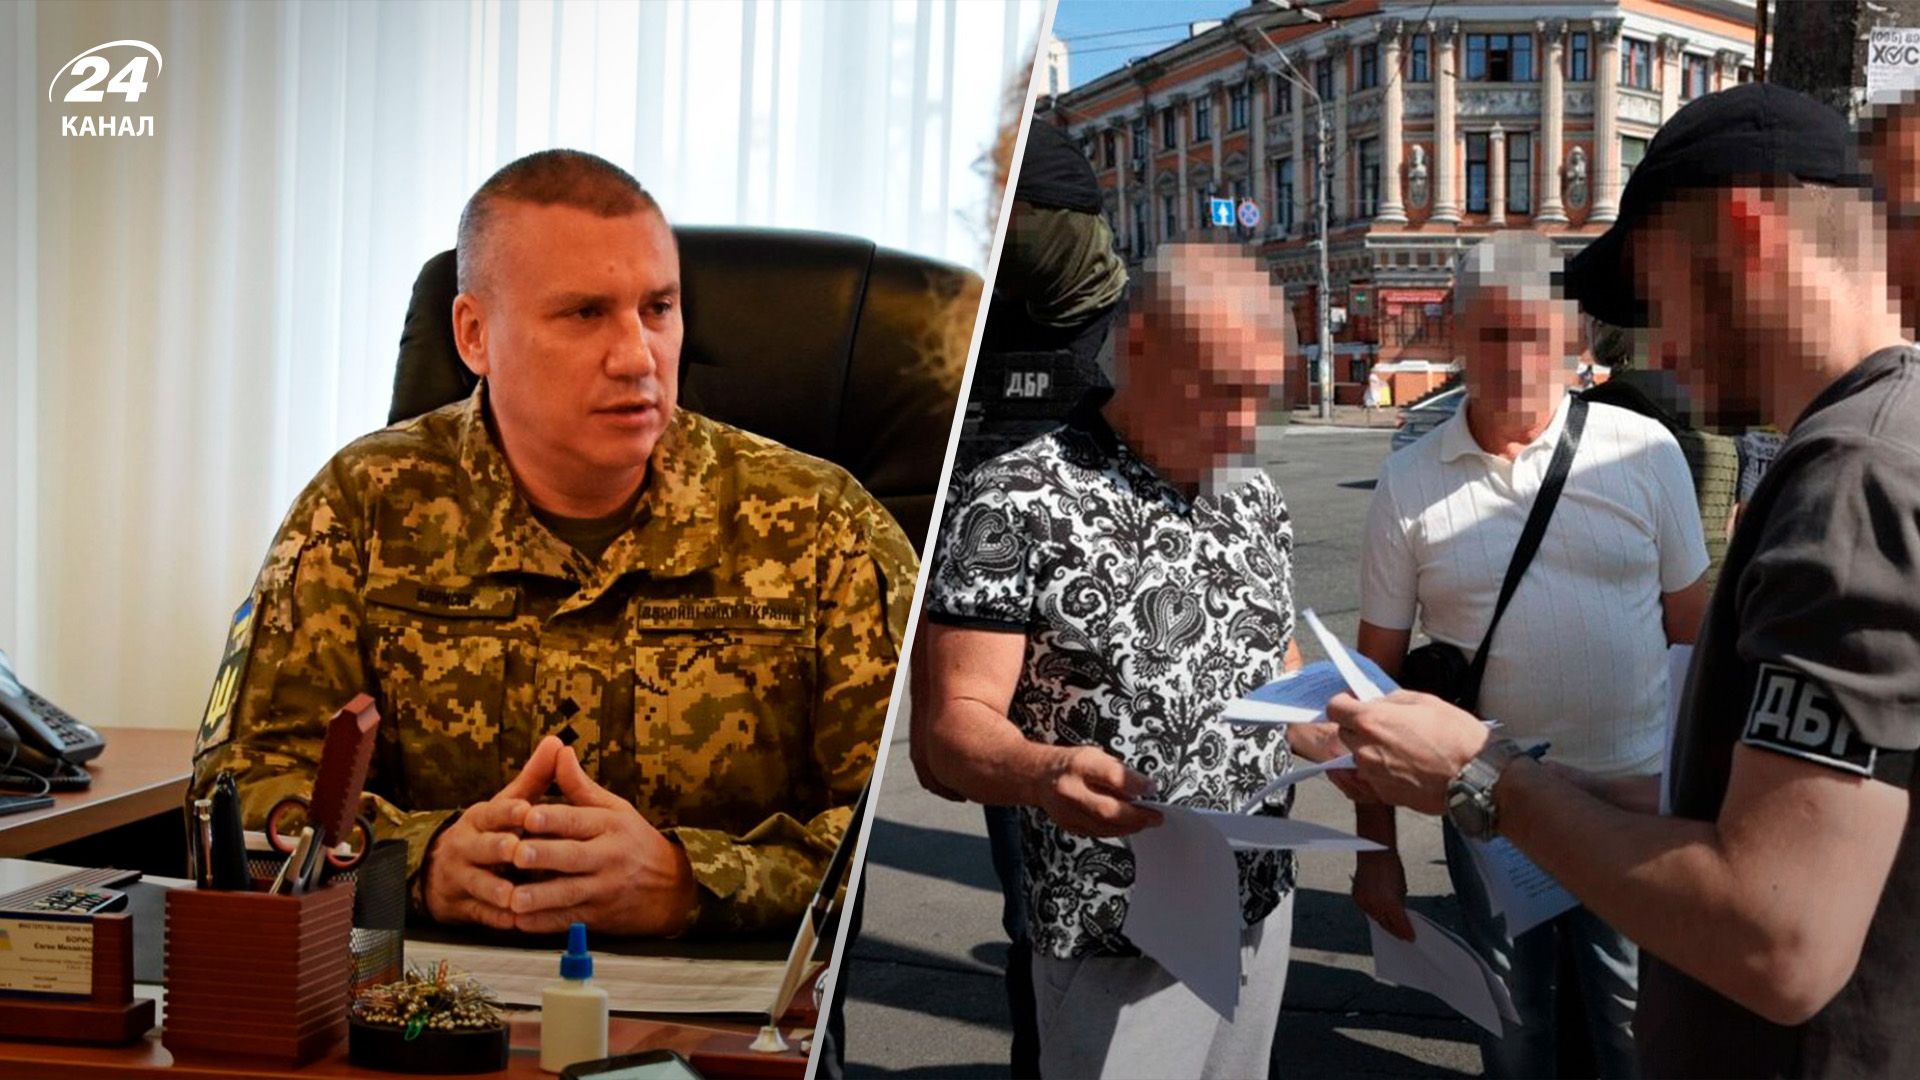 Задержание военкома Борисова - почему для украинцев важно правосудие - 24 Канал